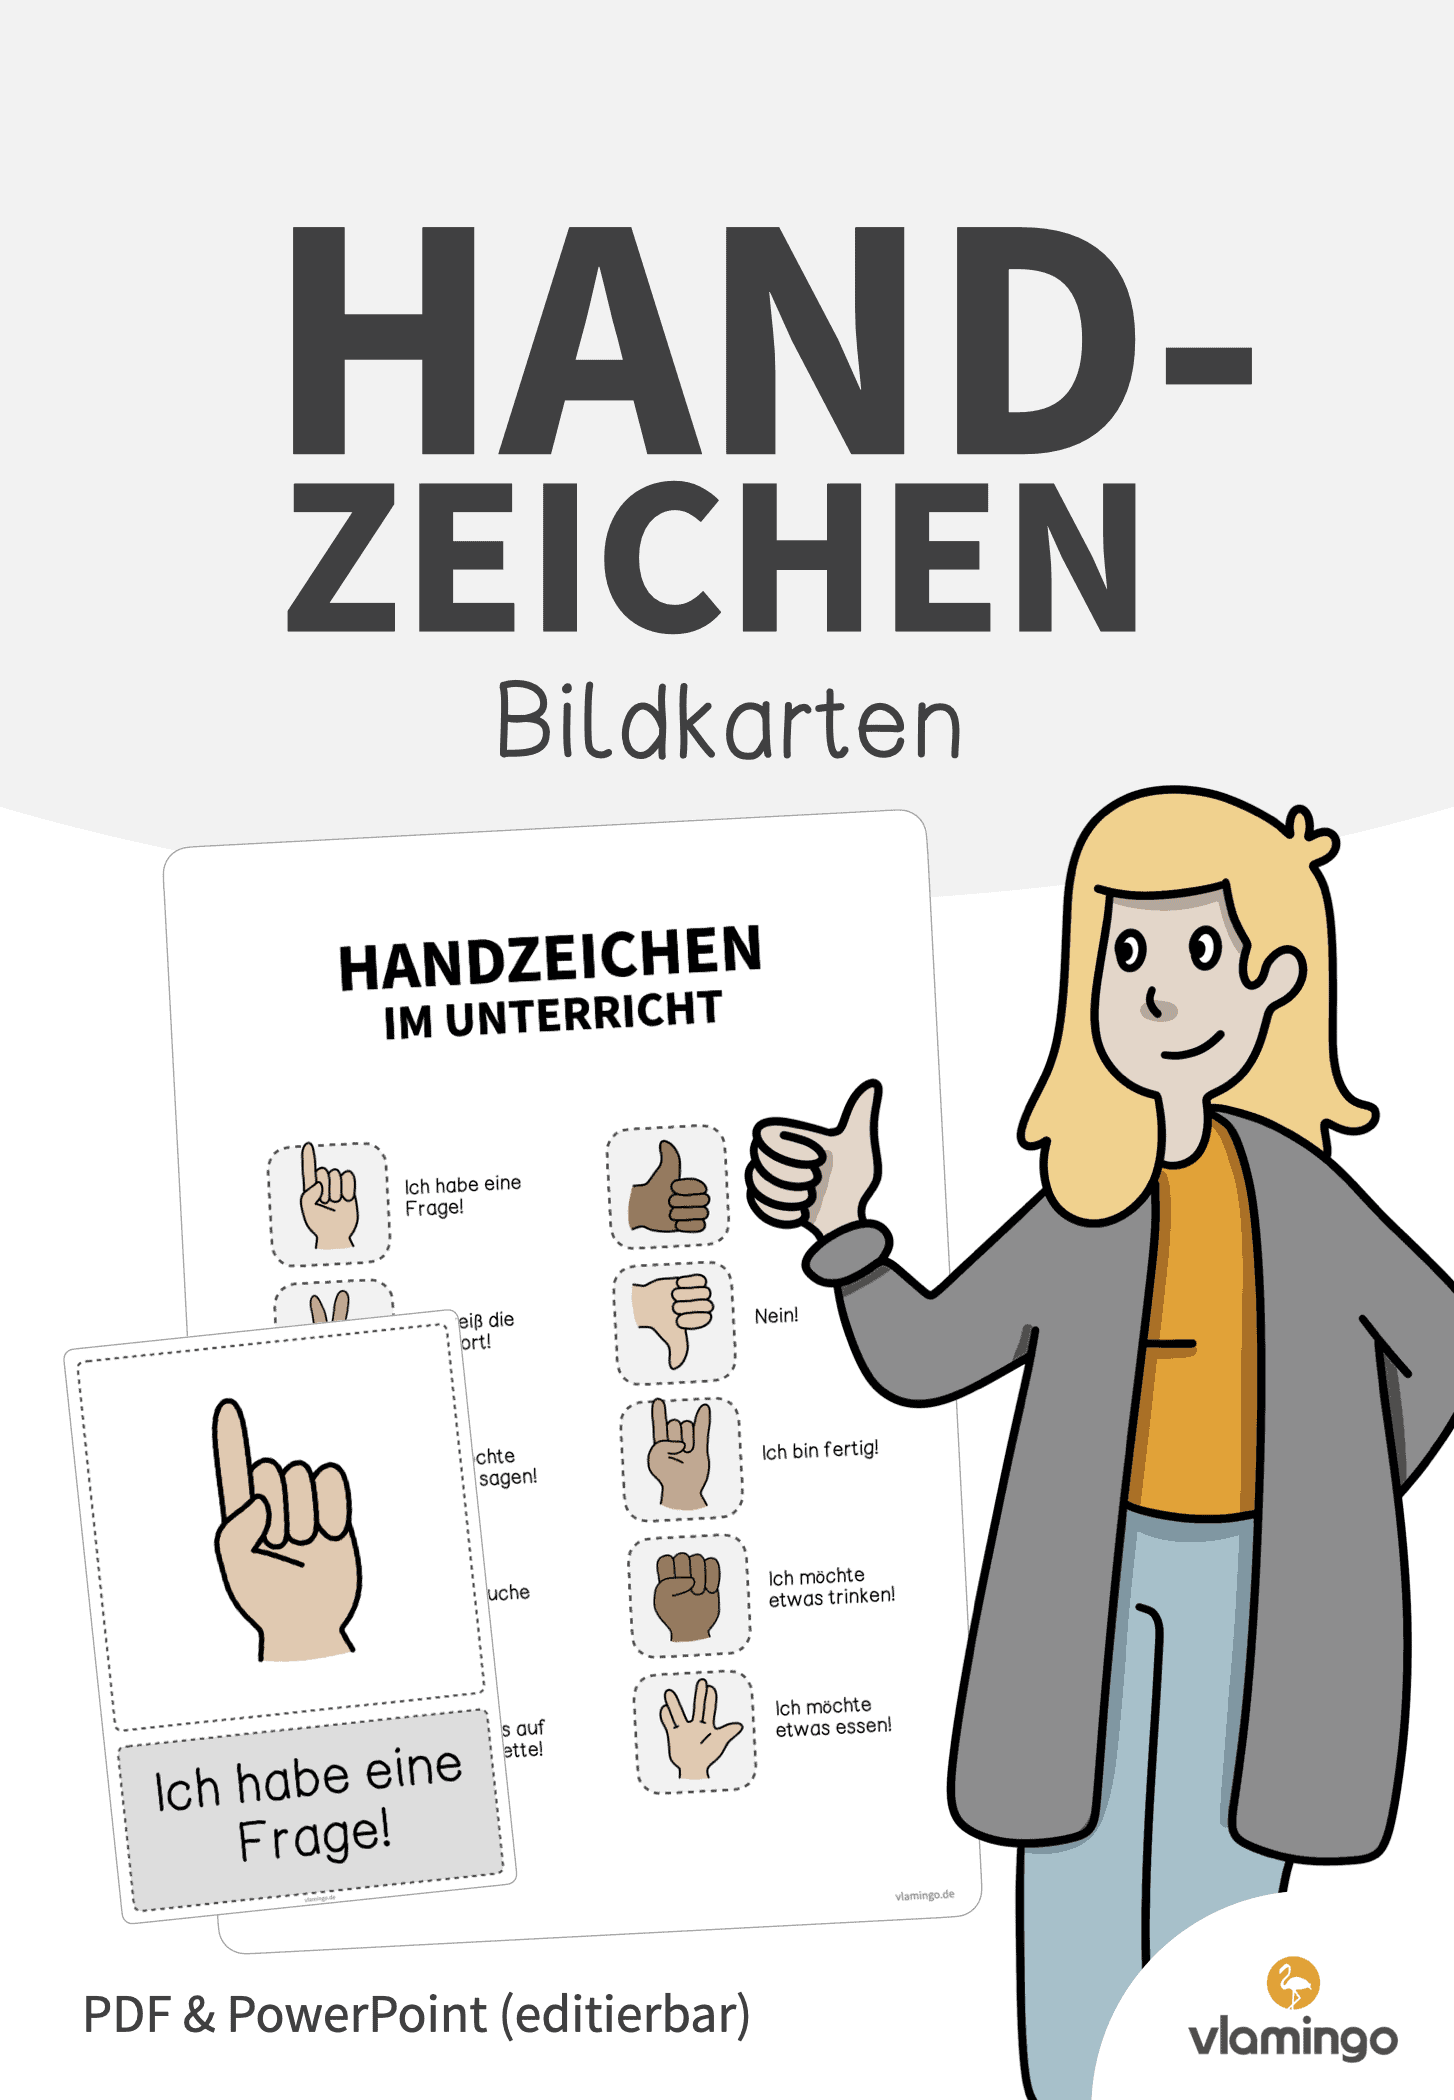 Handzeichen im Unterricht